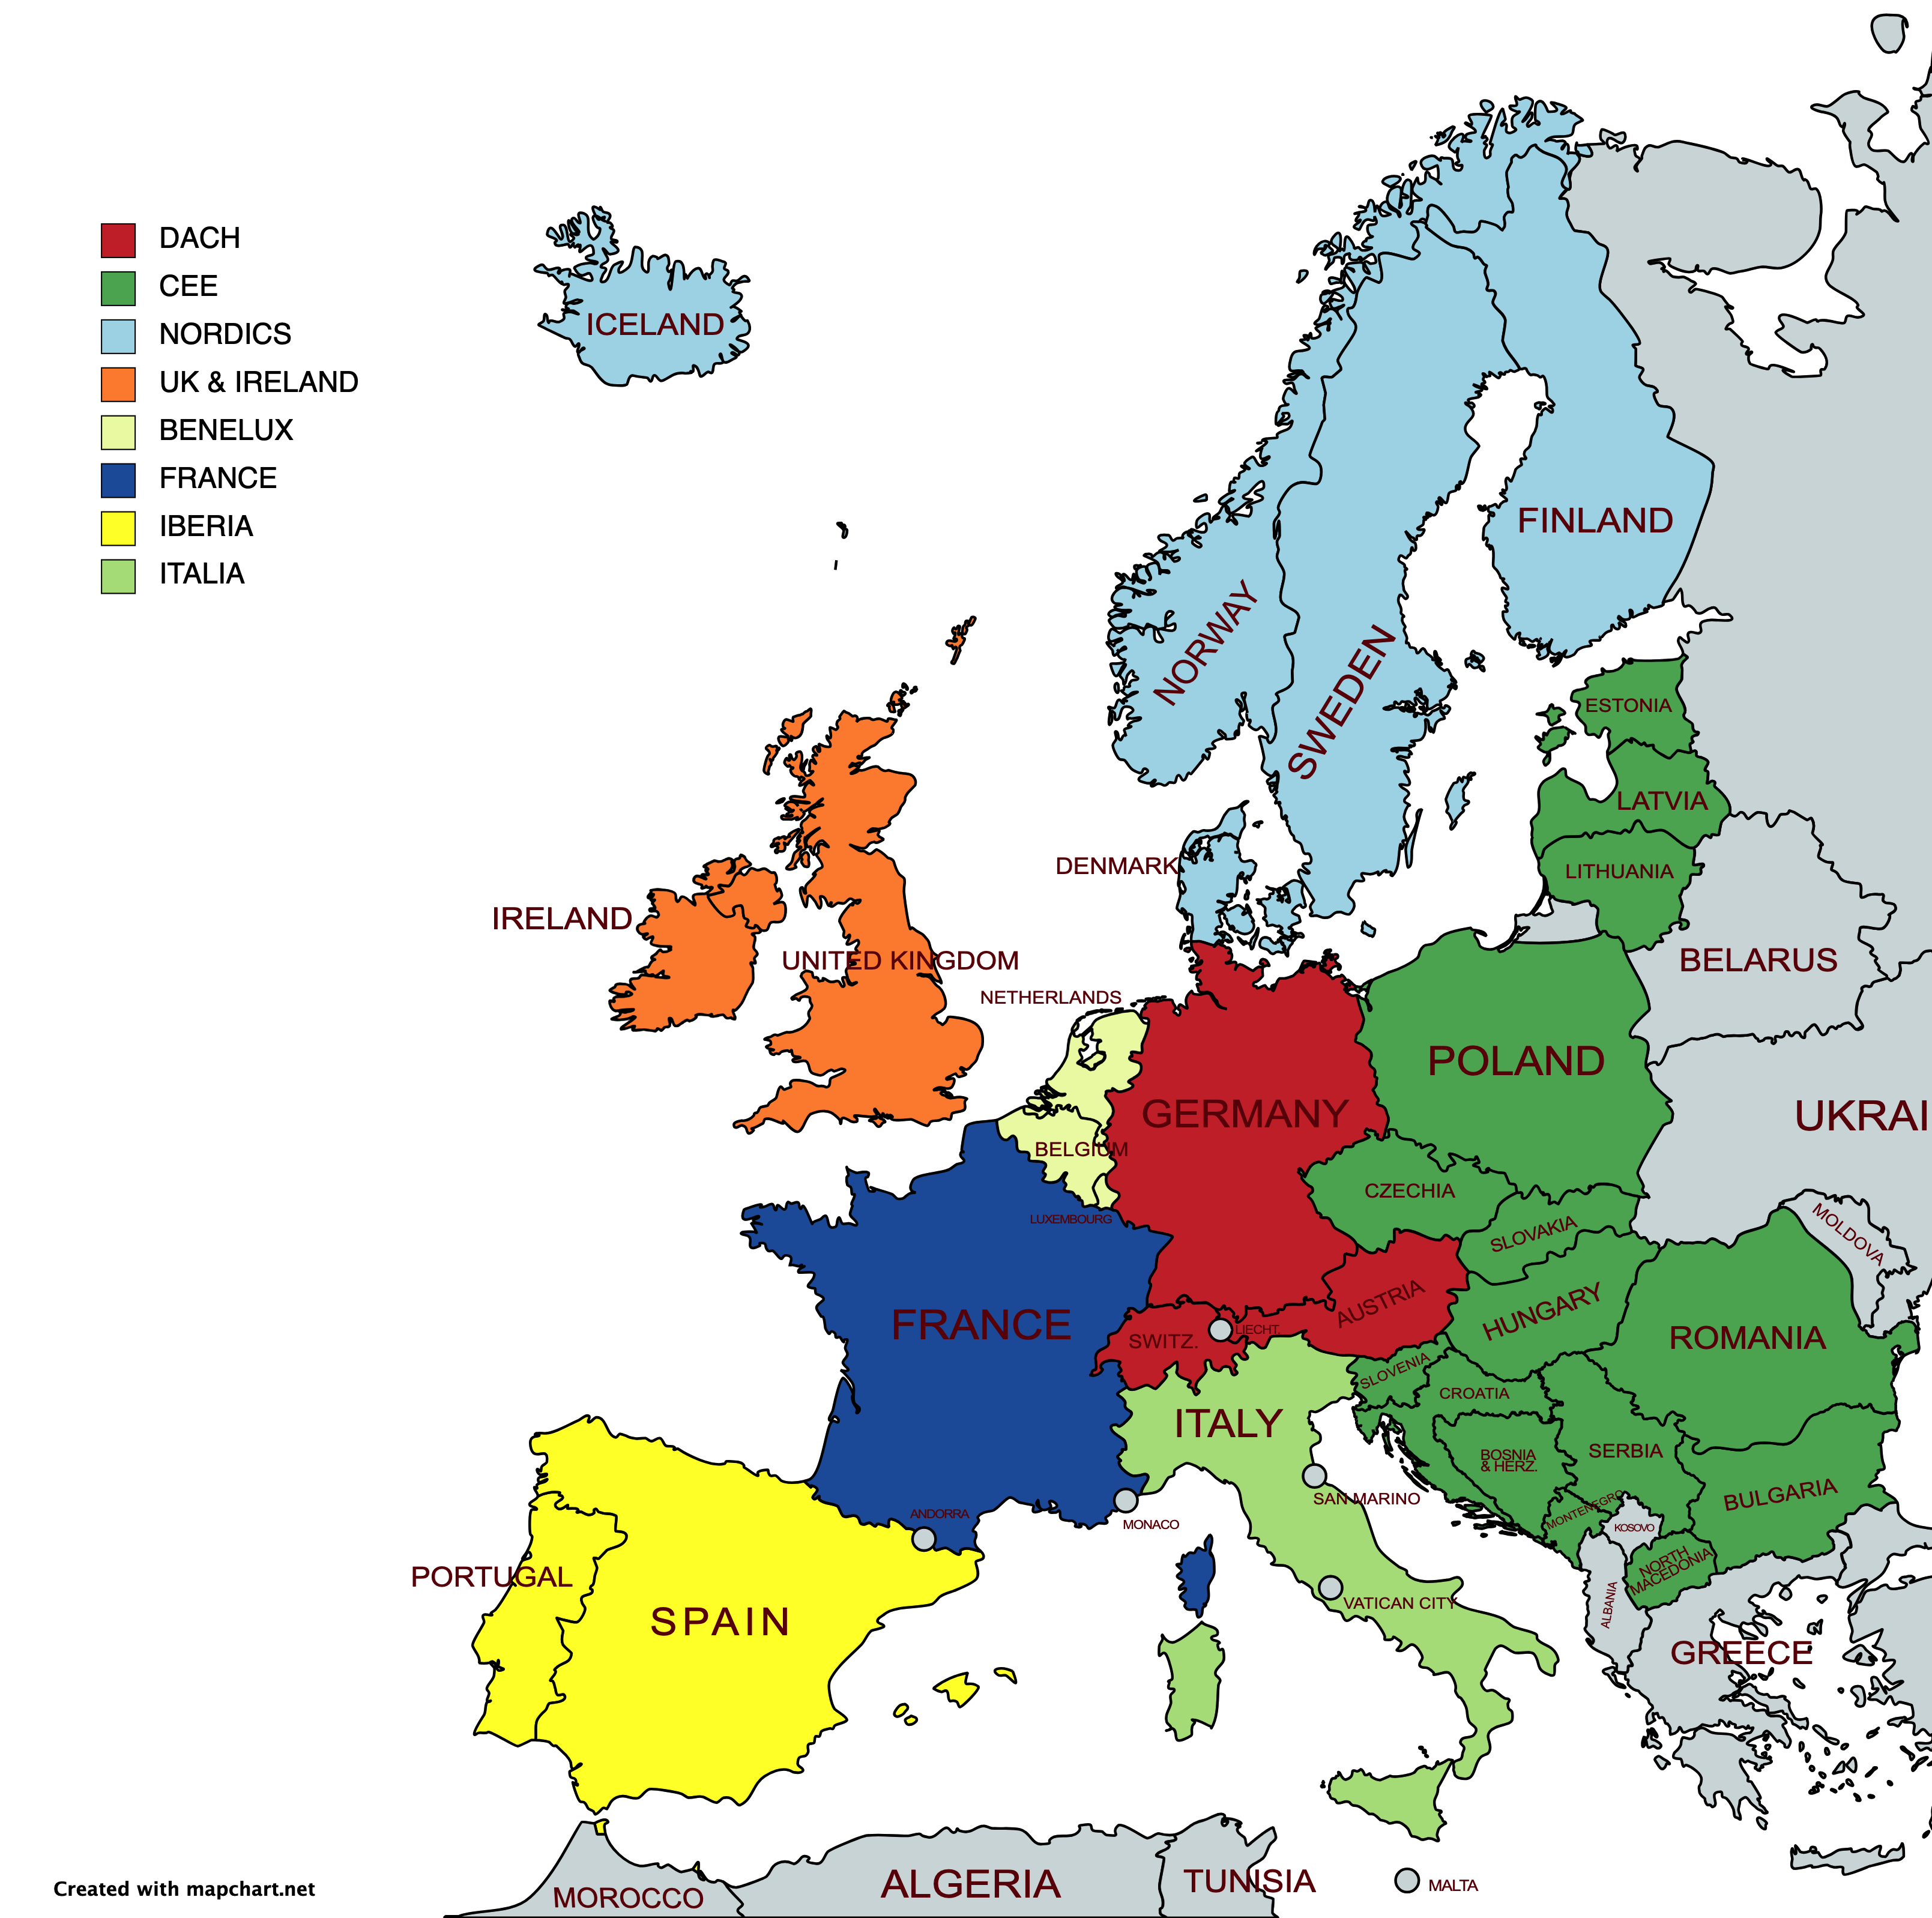 Europa in Regionen aufgeteilt - DACH, CEE, NORDICS, IBERIA, BENELUX, UK & IRLAND, FRANKREICH, ITALIEN